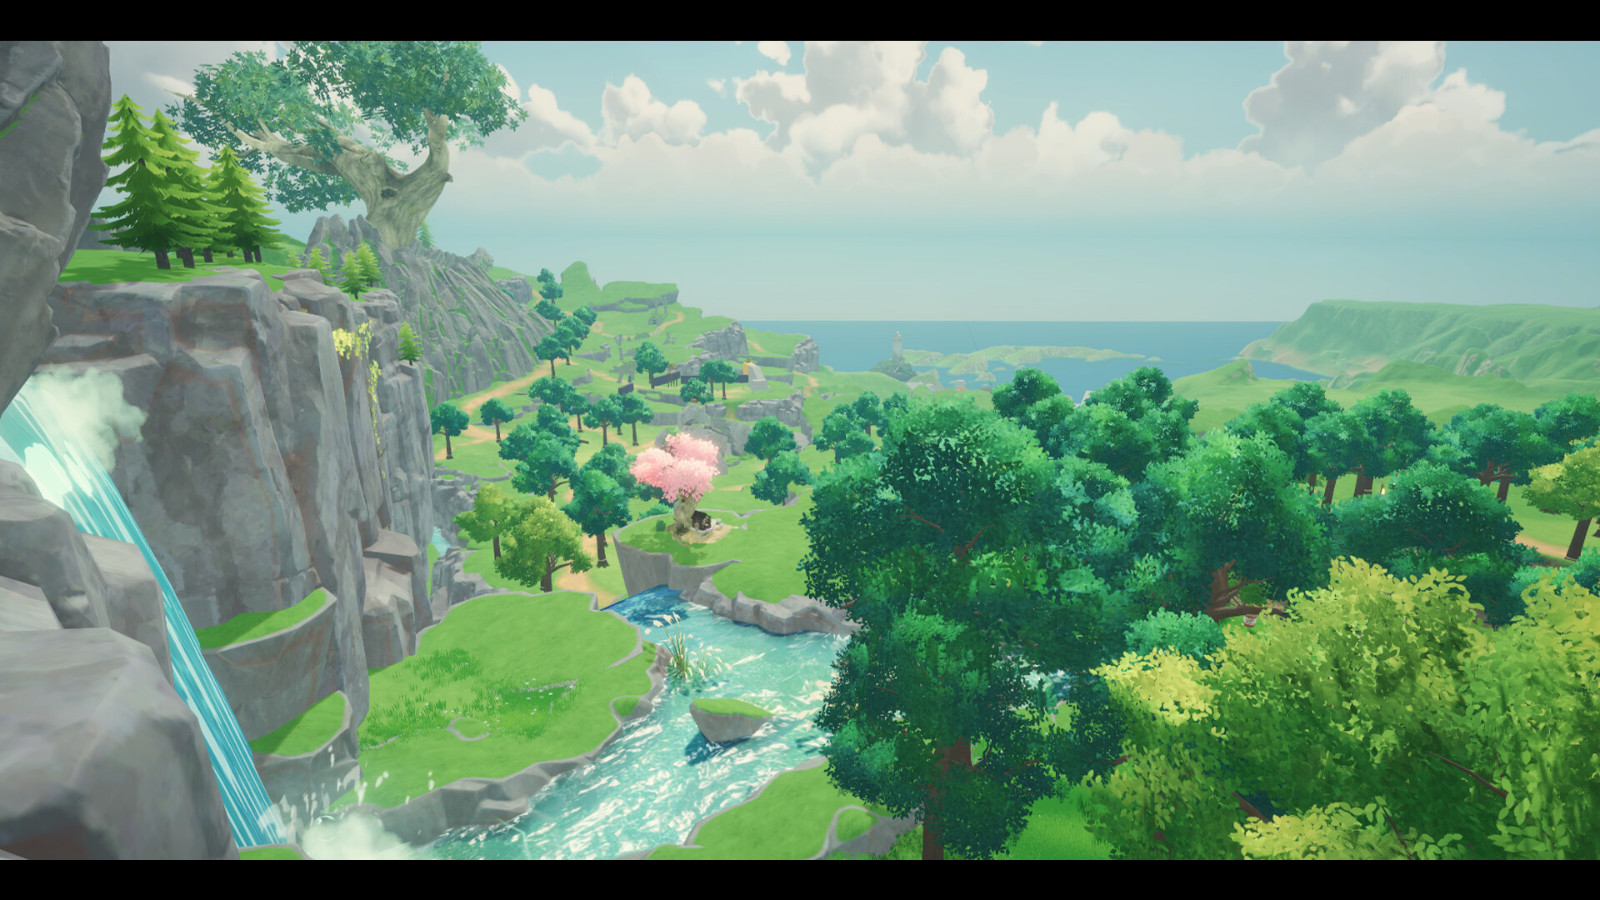 东方奇幻风格的农场模拟冒险游戏《青丘物语》Steam页面上线 发售日期待定 二次世界 第9张